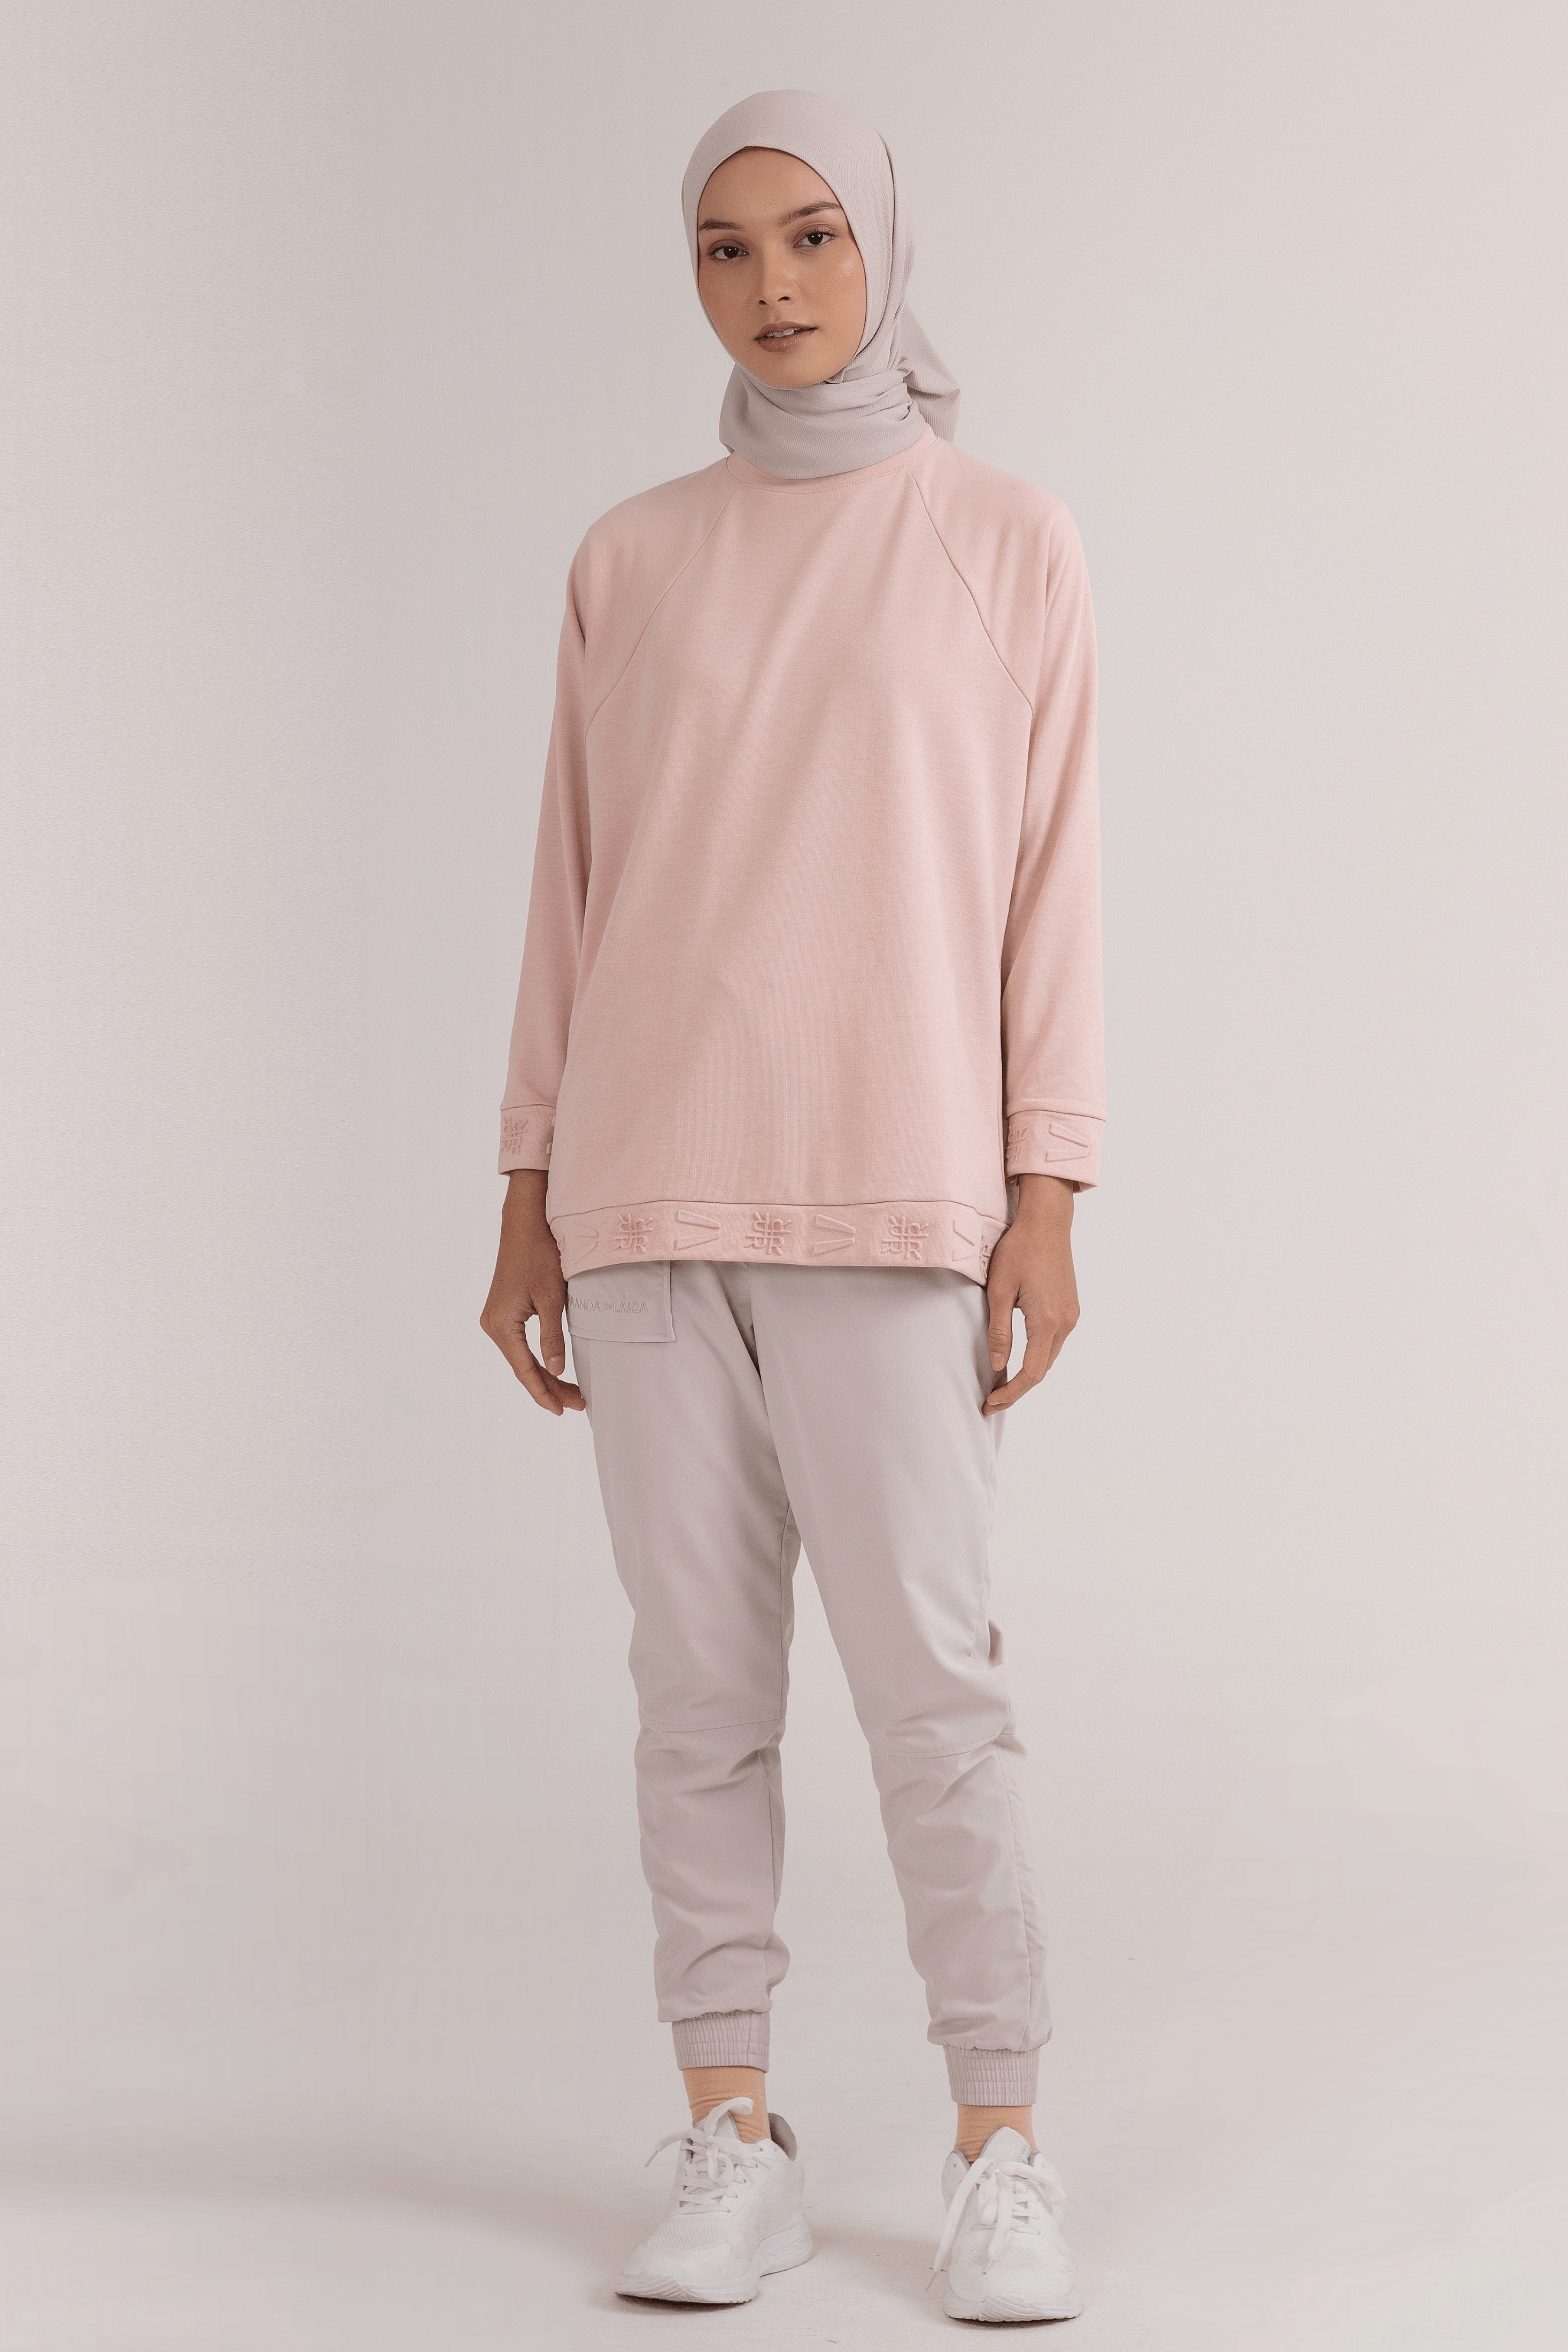 LAICA x RiaMiranda Embossed Sweater - Cameo Rose